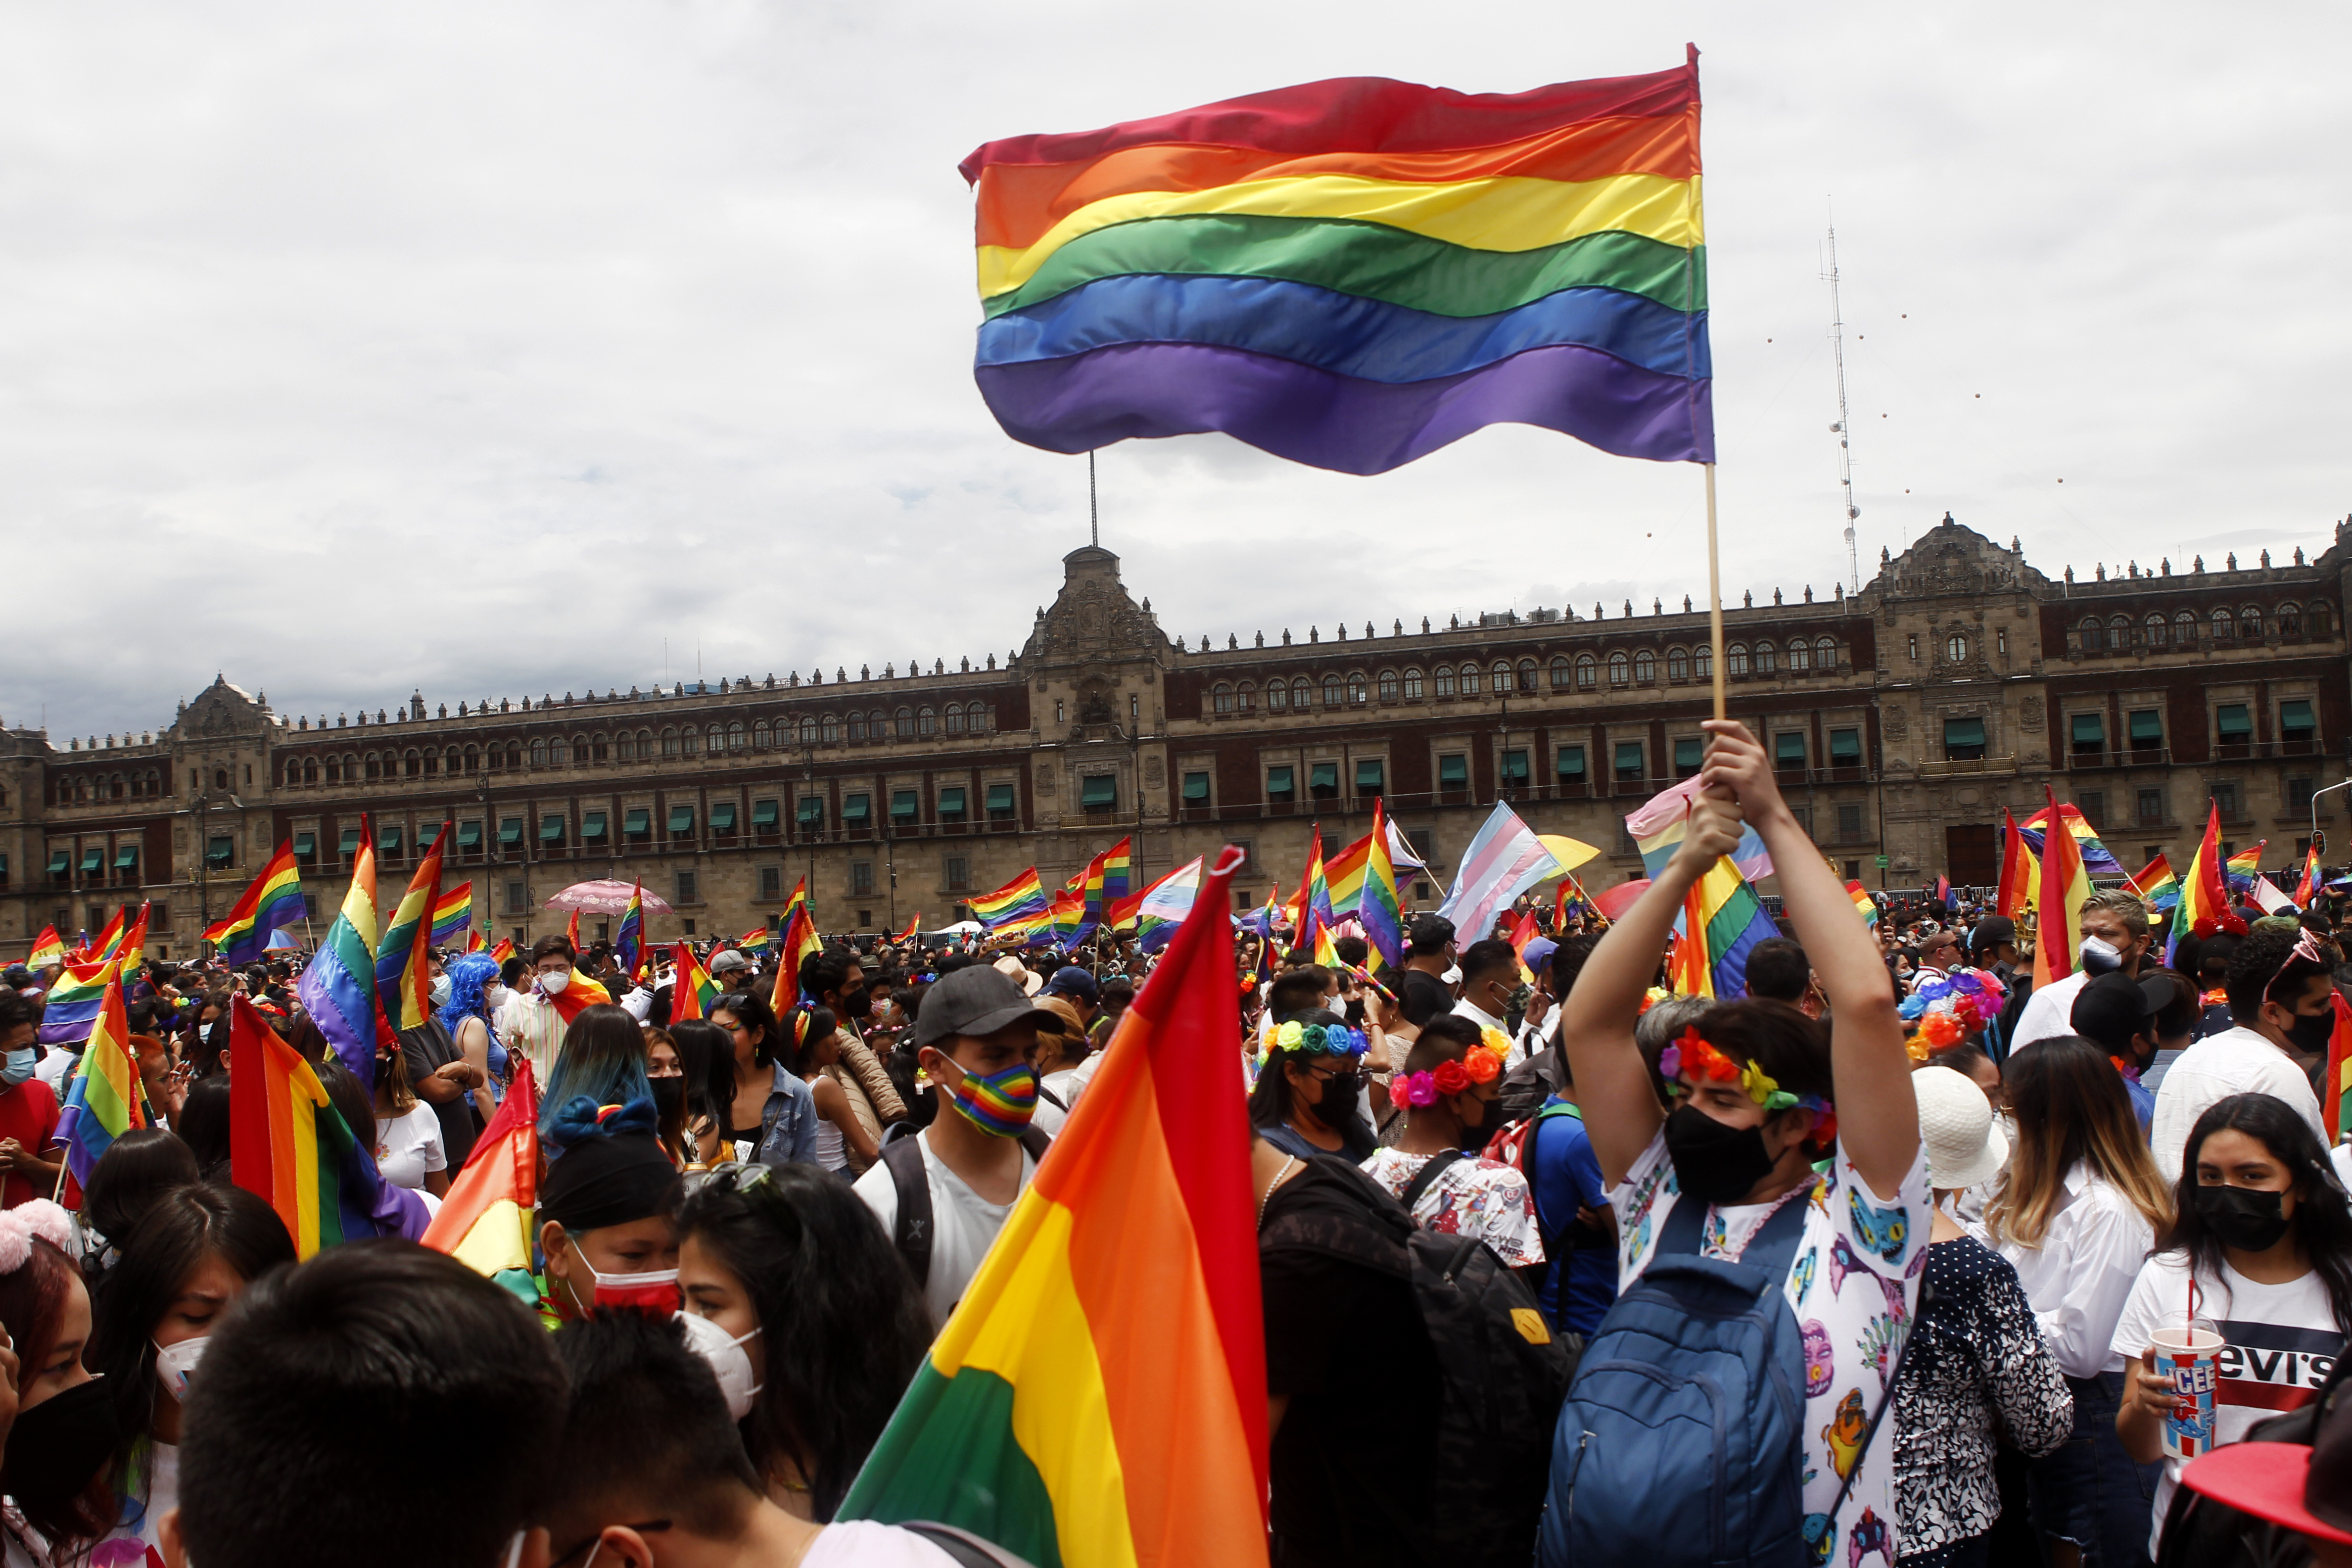 La Marcha del Orgullo LGBTTTIQ en Ciudad de México tendrá como recorrido del Ángel de la Independencia al Zócalo capitalino. (Foto: Karina Herández / Infobae)